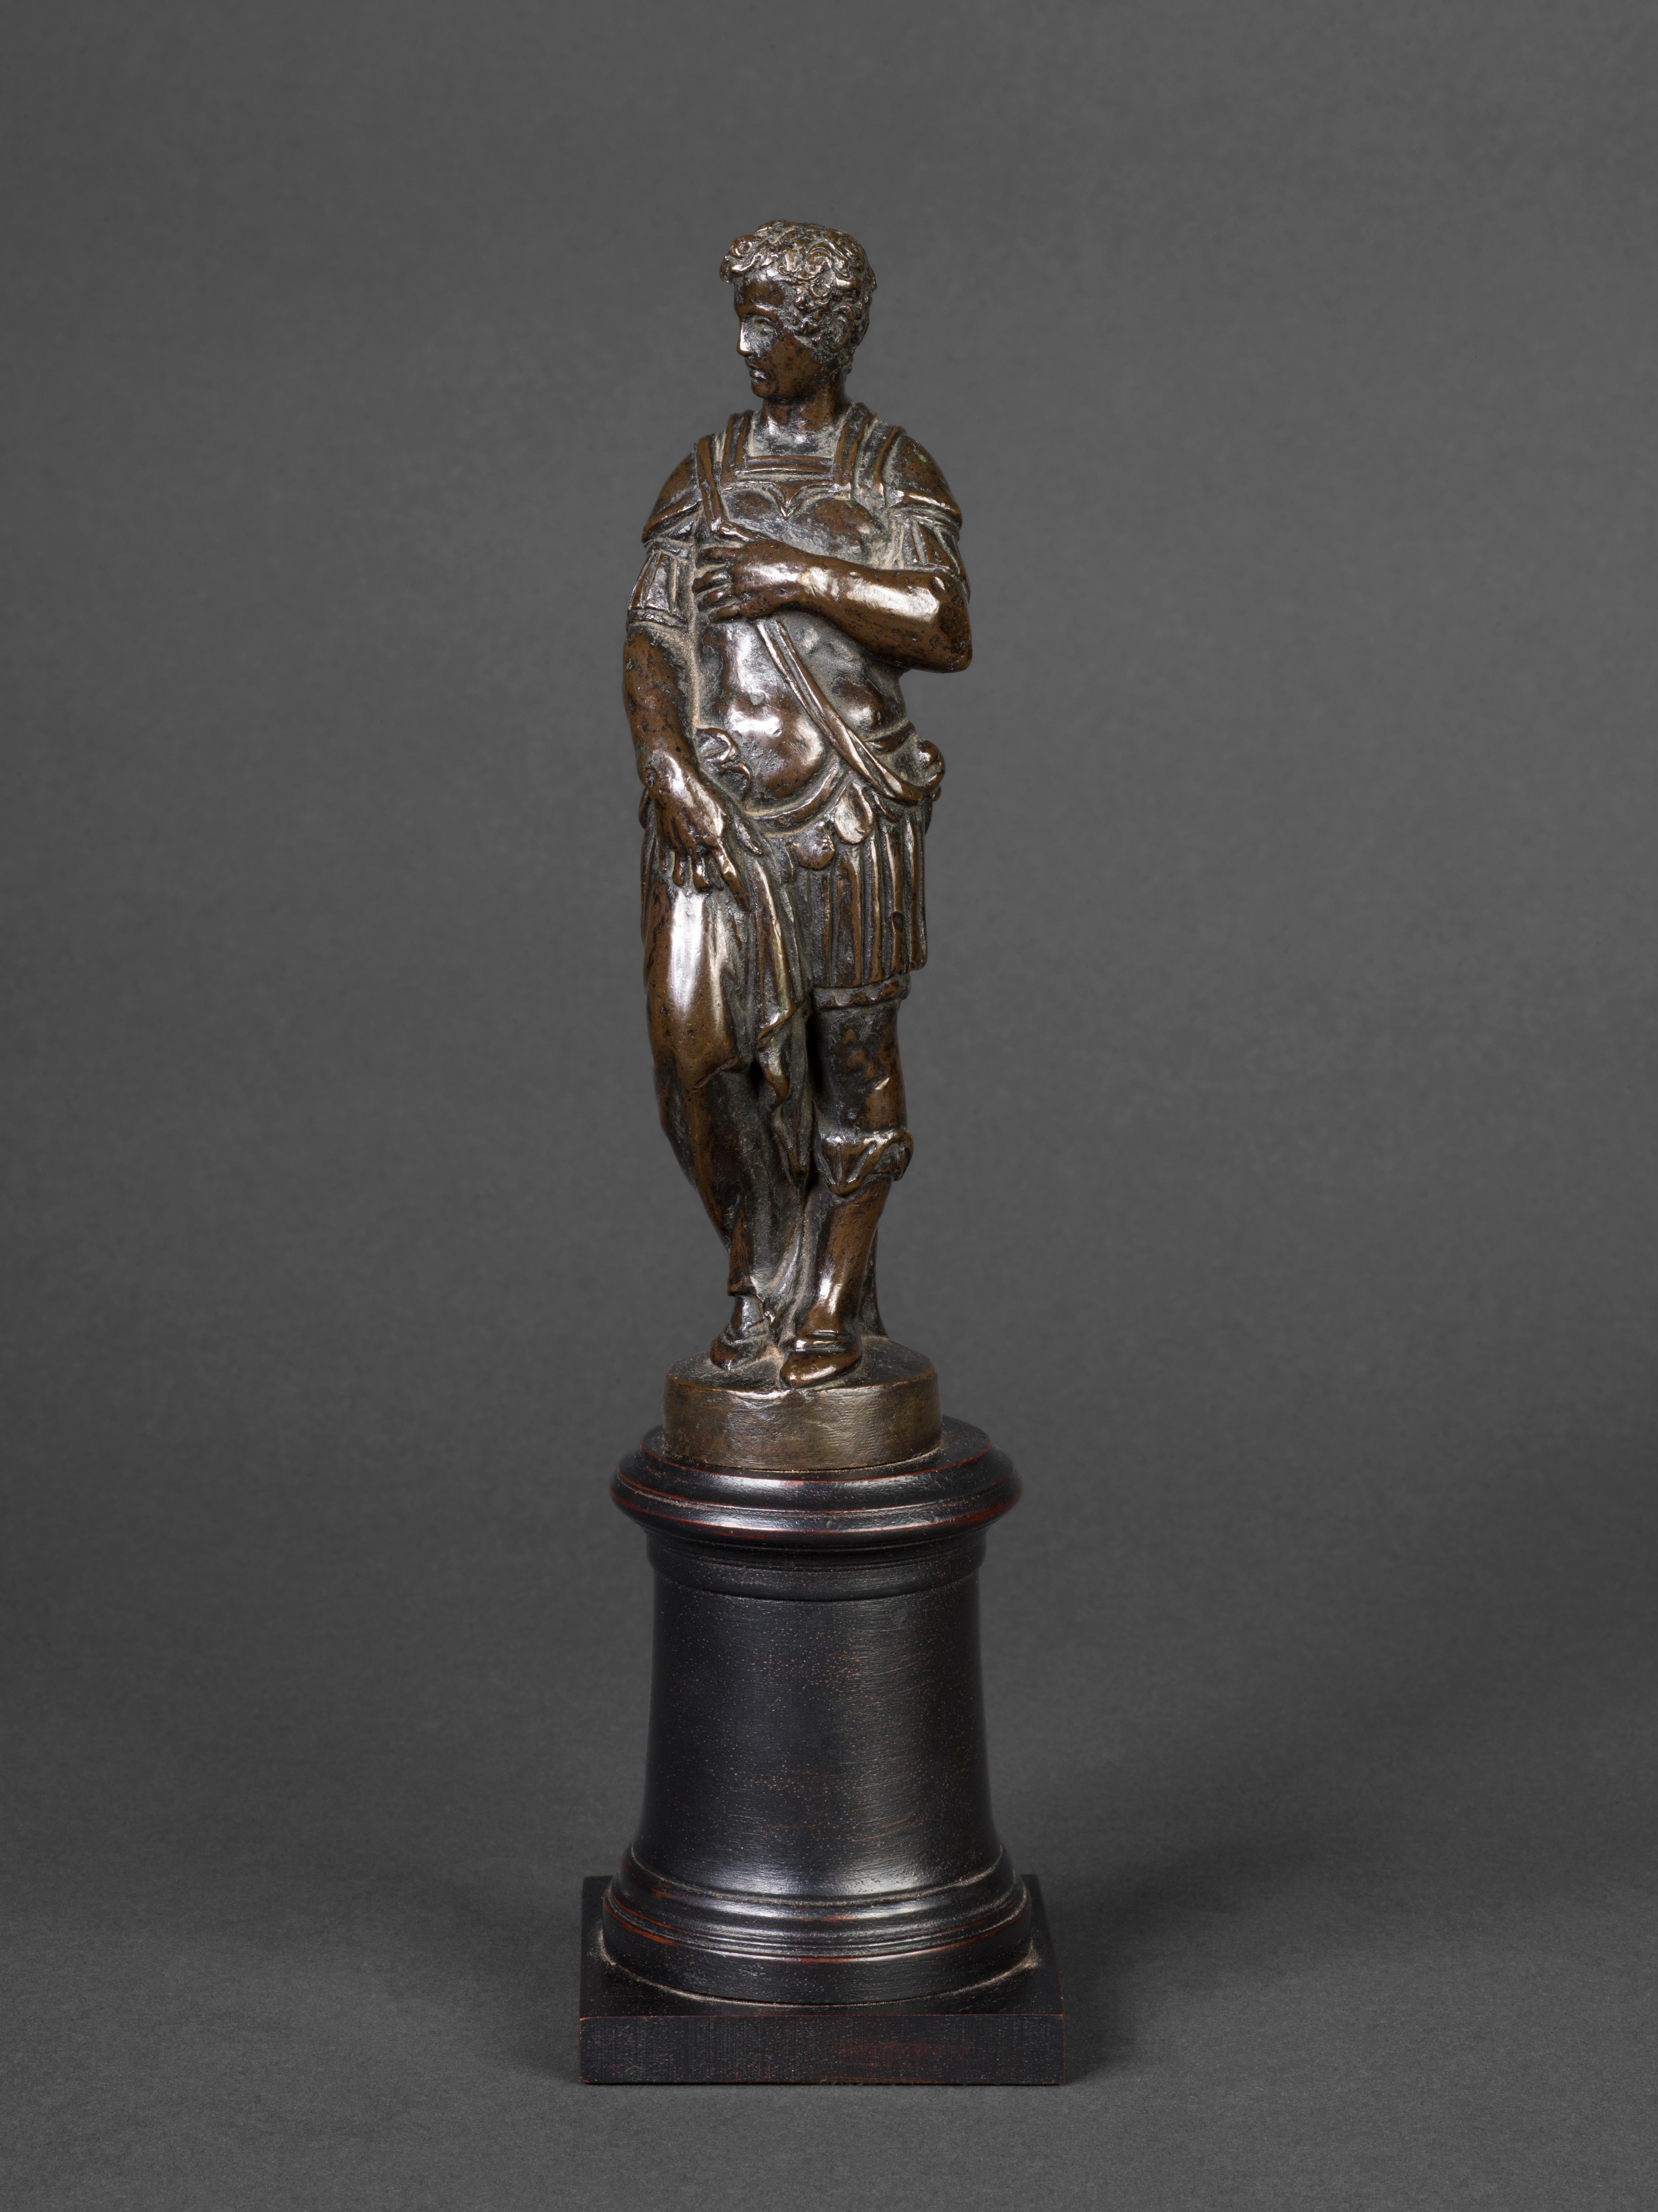 Sculpture vénitienne en bronze du XVIe siècle représentant un jeune homme en armure, attribuée à l'artiste florentin Andrea di Alessandri, appelé Il Bresciano (Florence, 1550-1575).
hauteur 17 cm (6 3/4 ) sans socle bronze sur socle en bois ébénisé